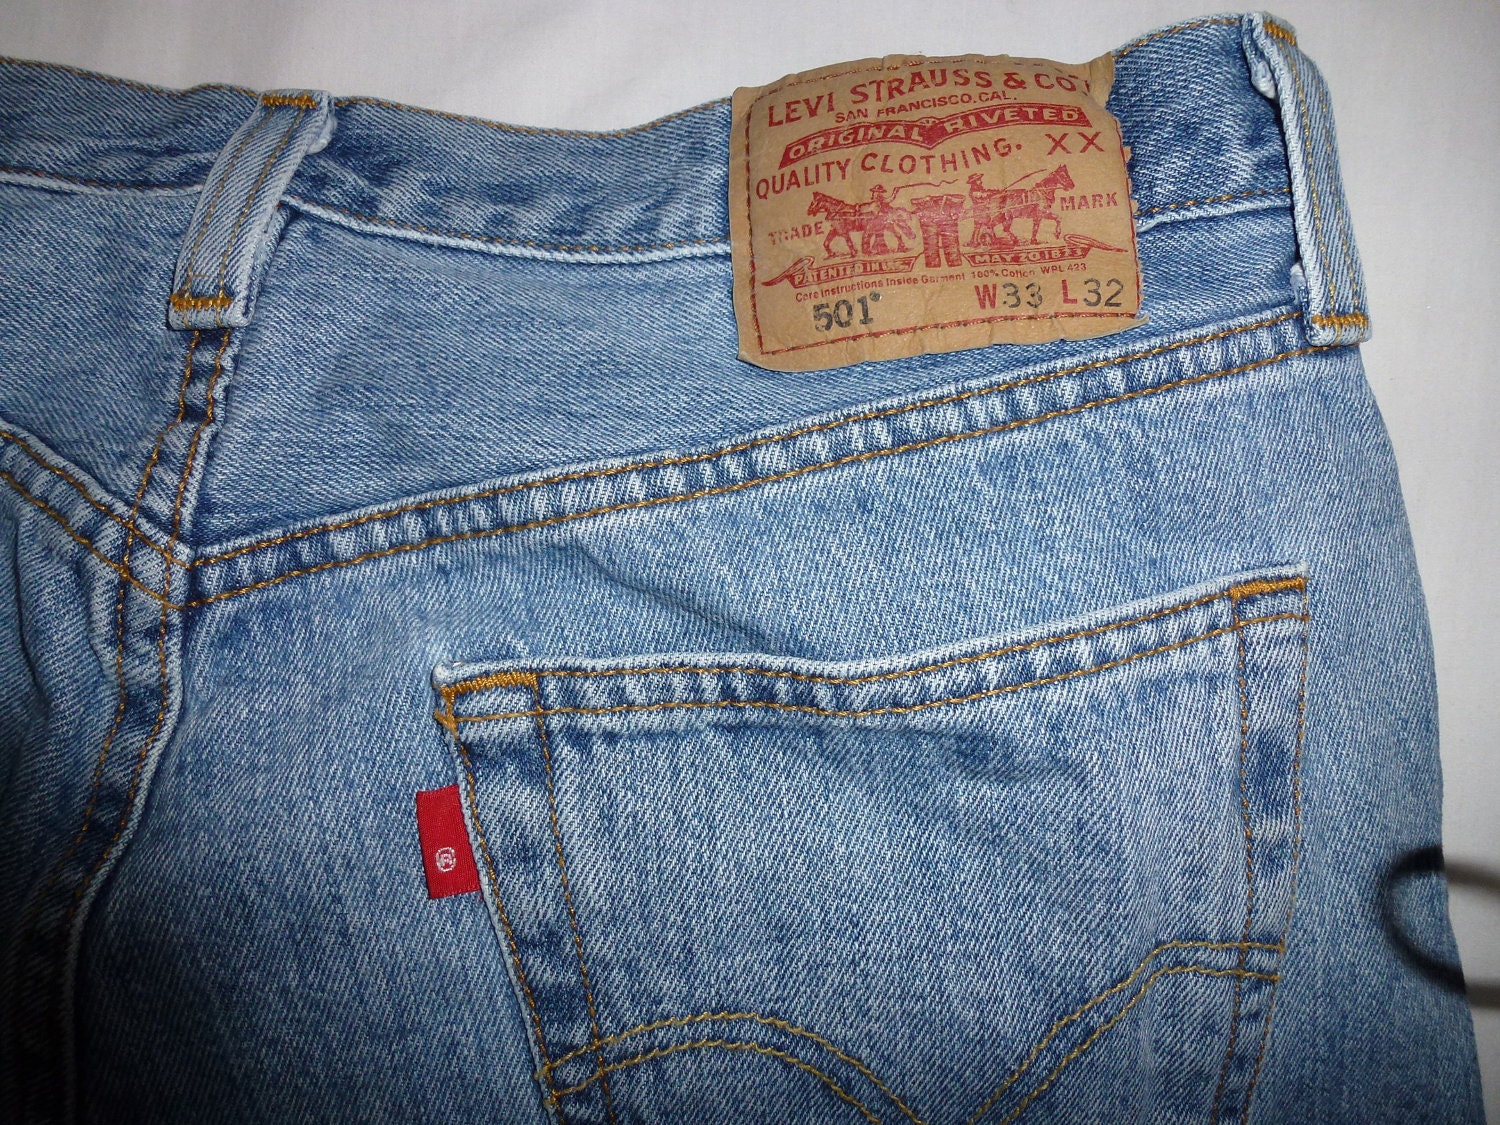 Vintage Levi's 501 jeans red label stonewash W33 L32